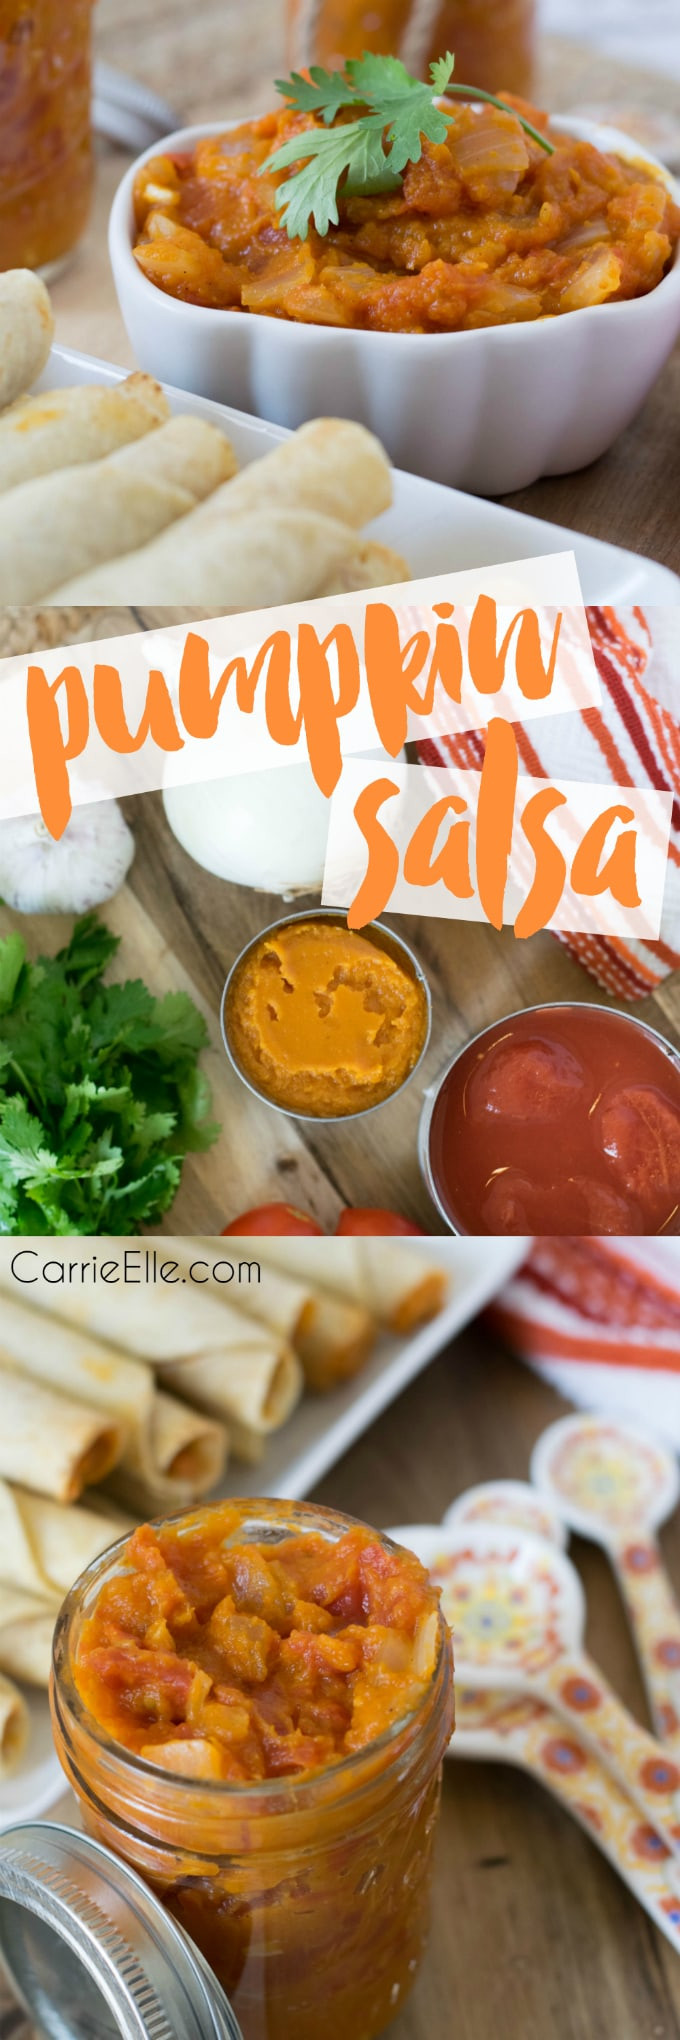 Pumpkin Salsa Recipe
 Afternoon Snacking & a Mild Pumpkin Salsa Recipe Carrie Elle